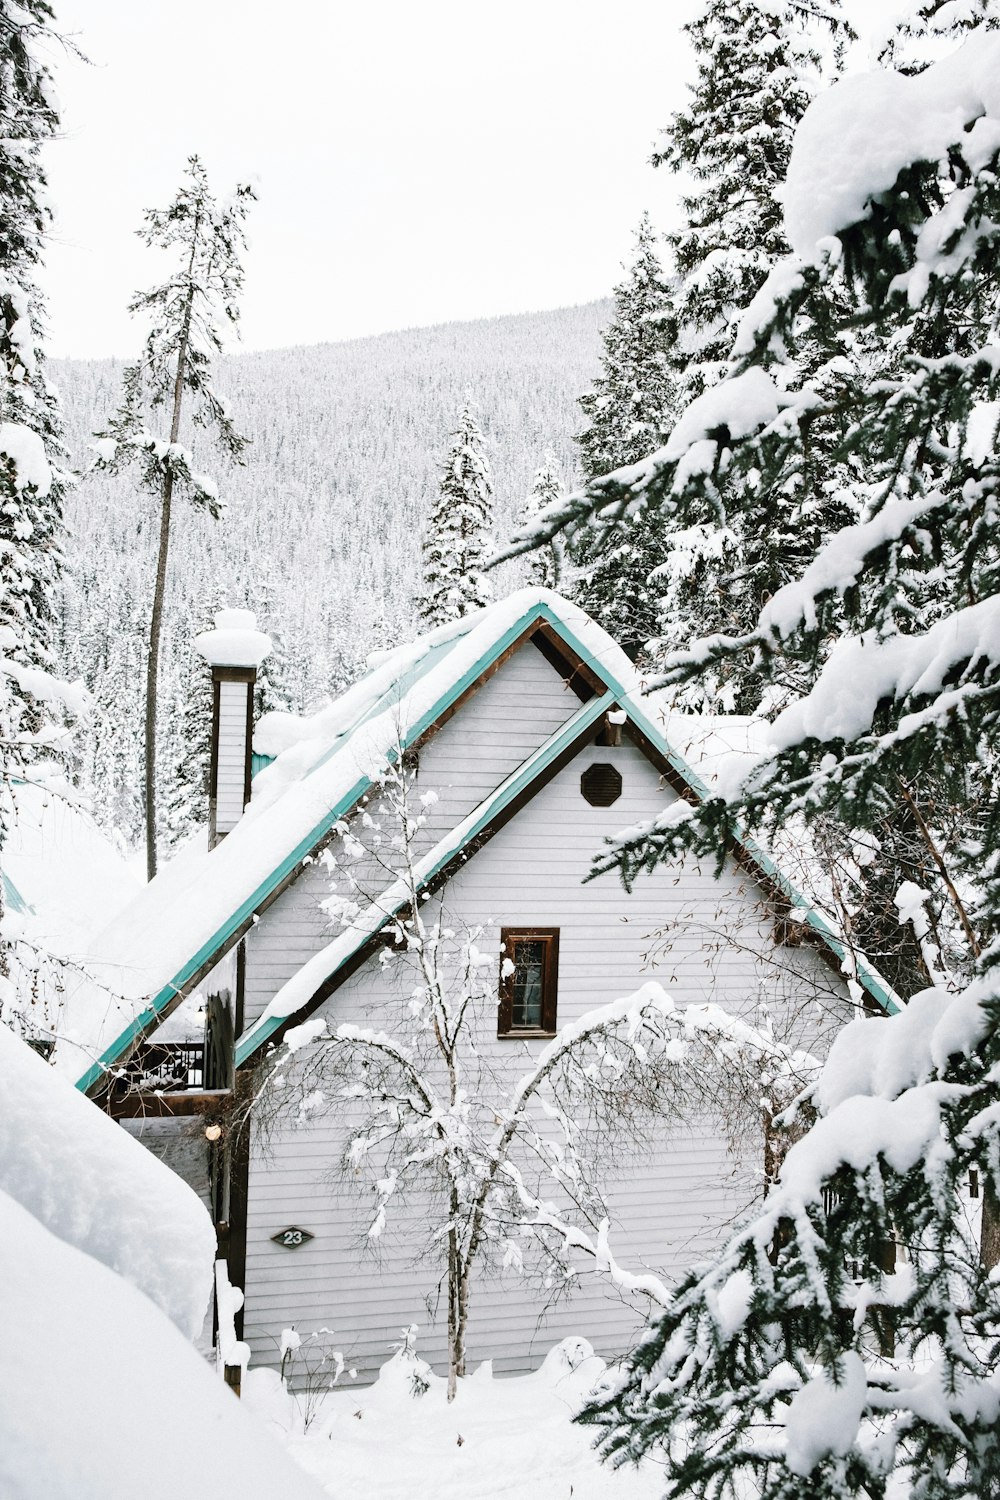 Maison en bois blanc près d’arbres recouverts de neige